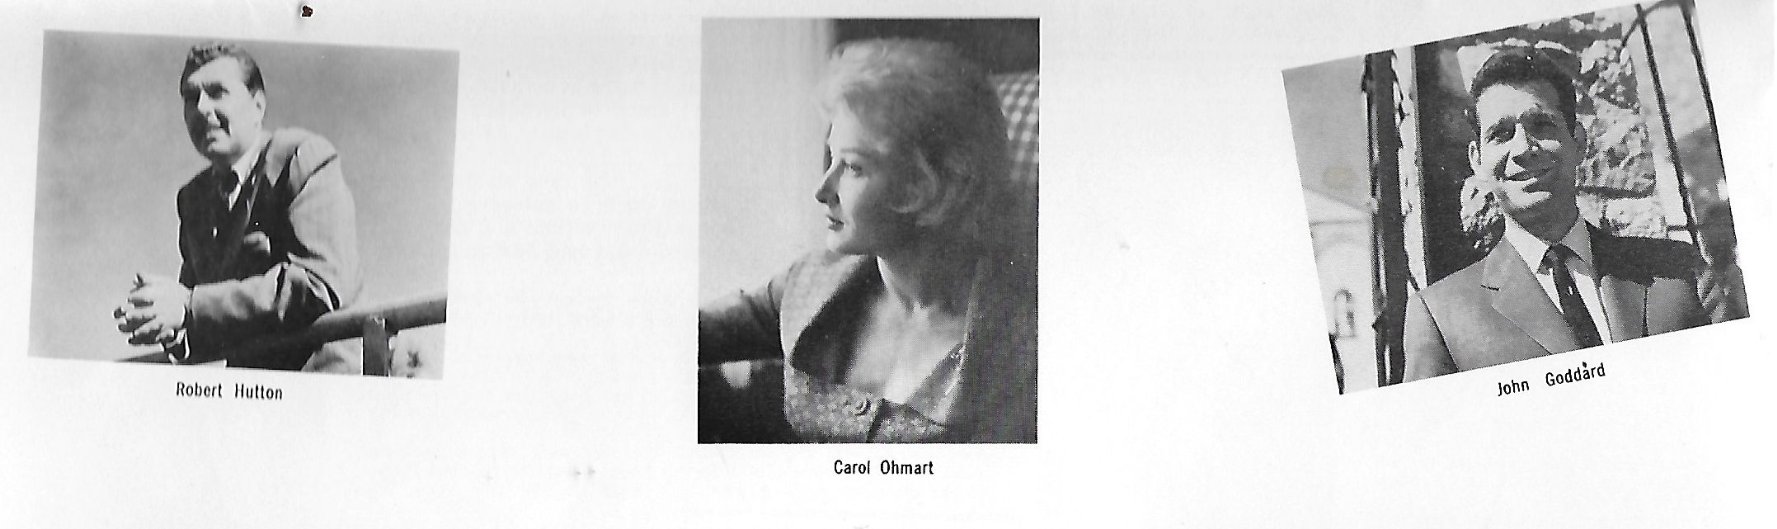 Carol Ohmart